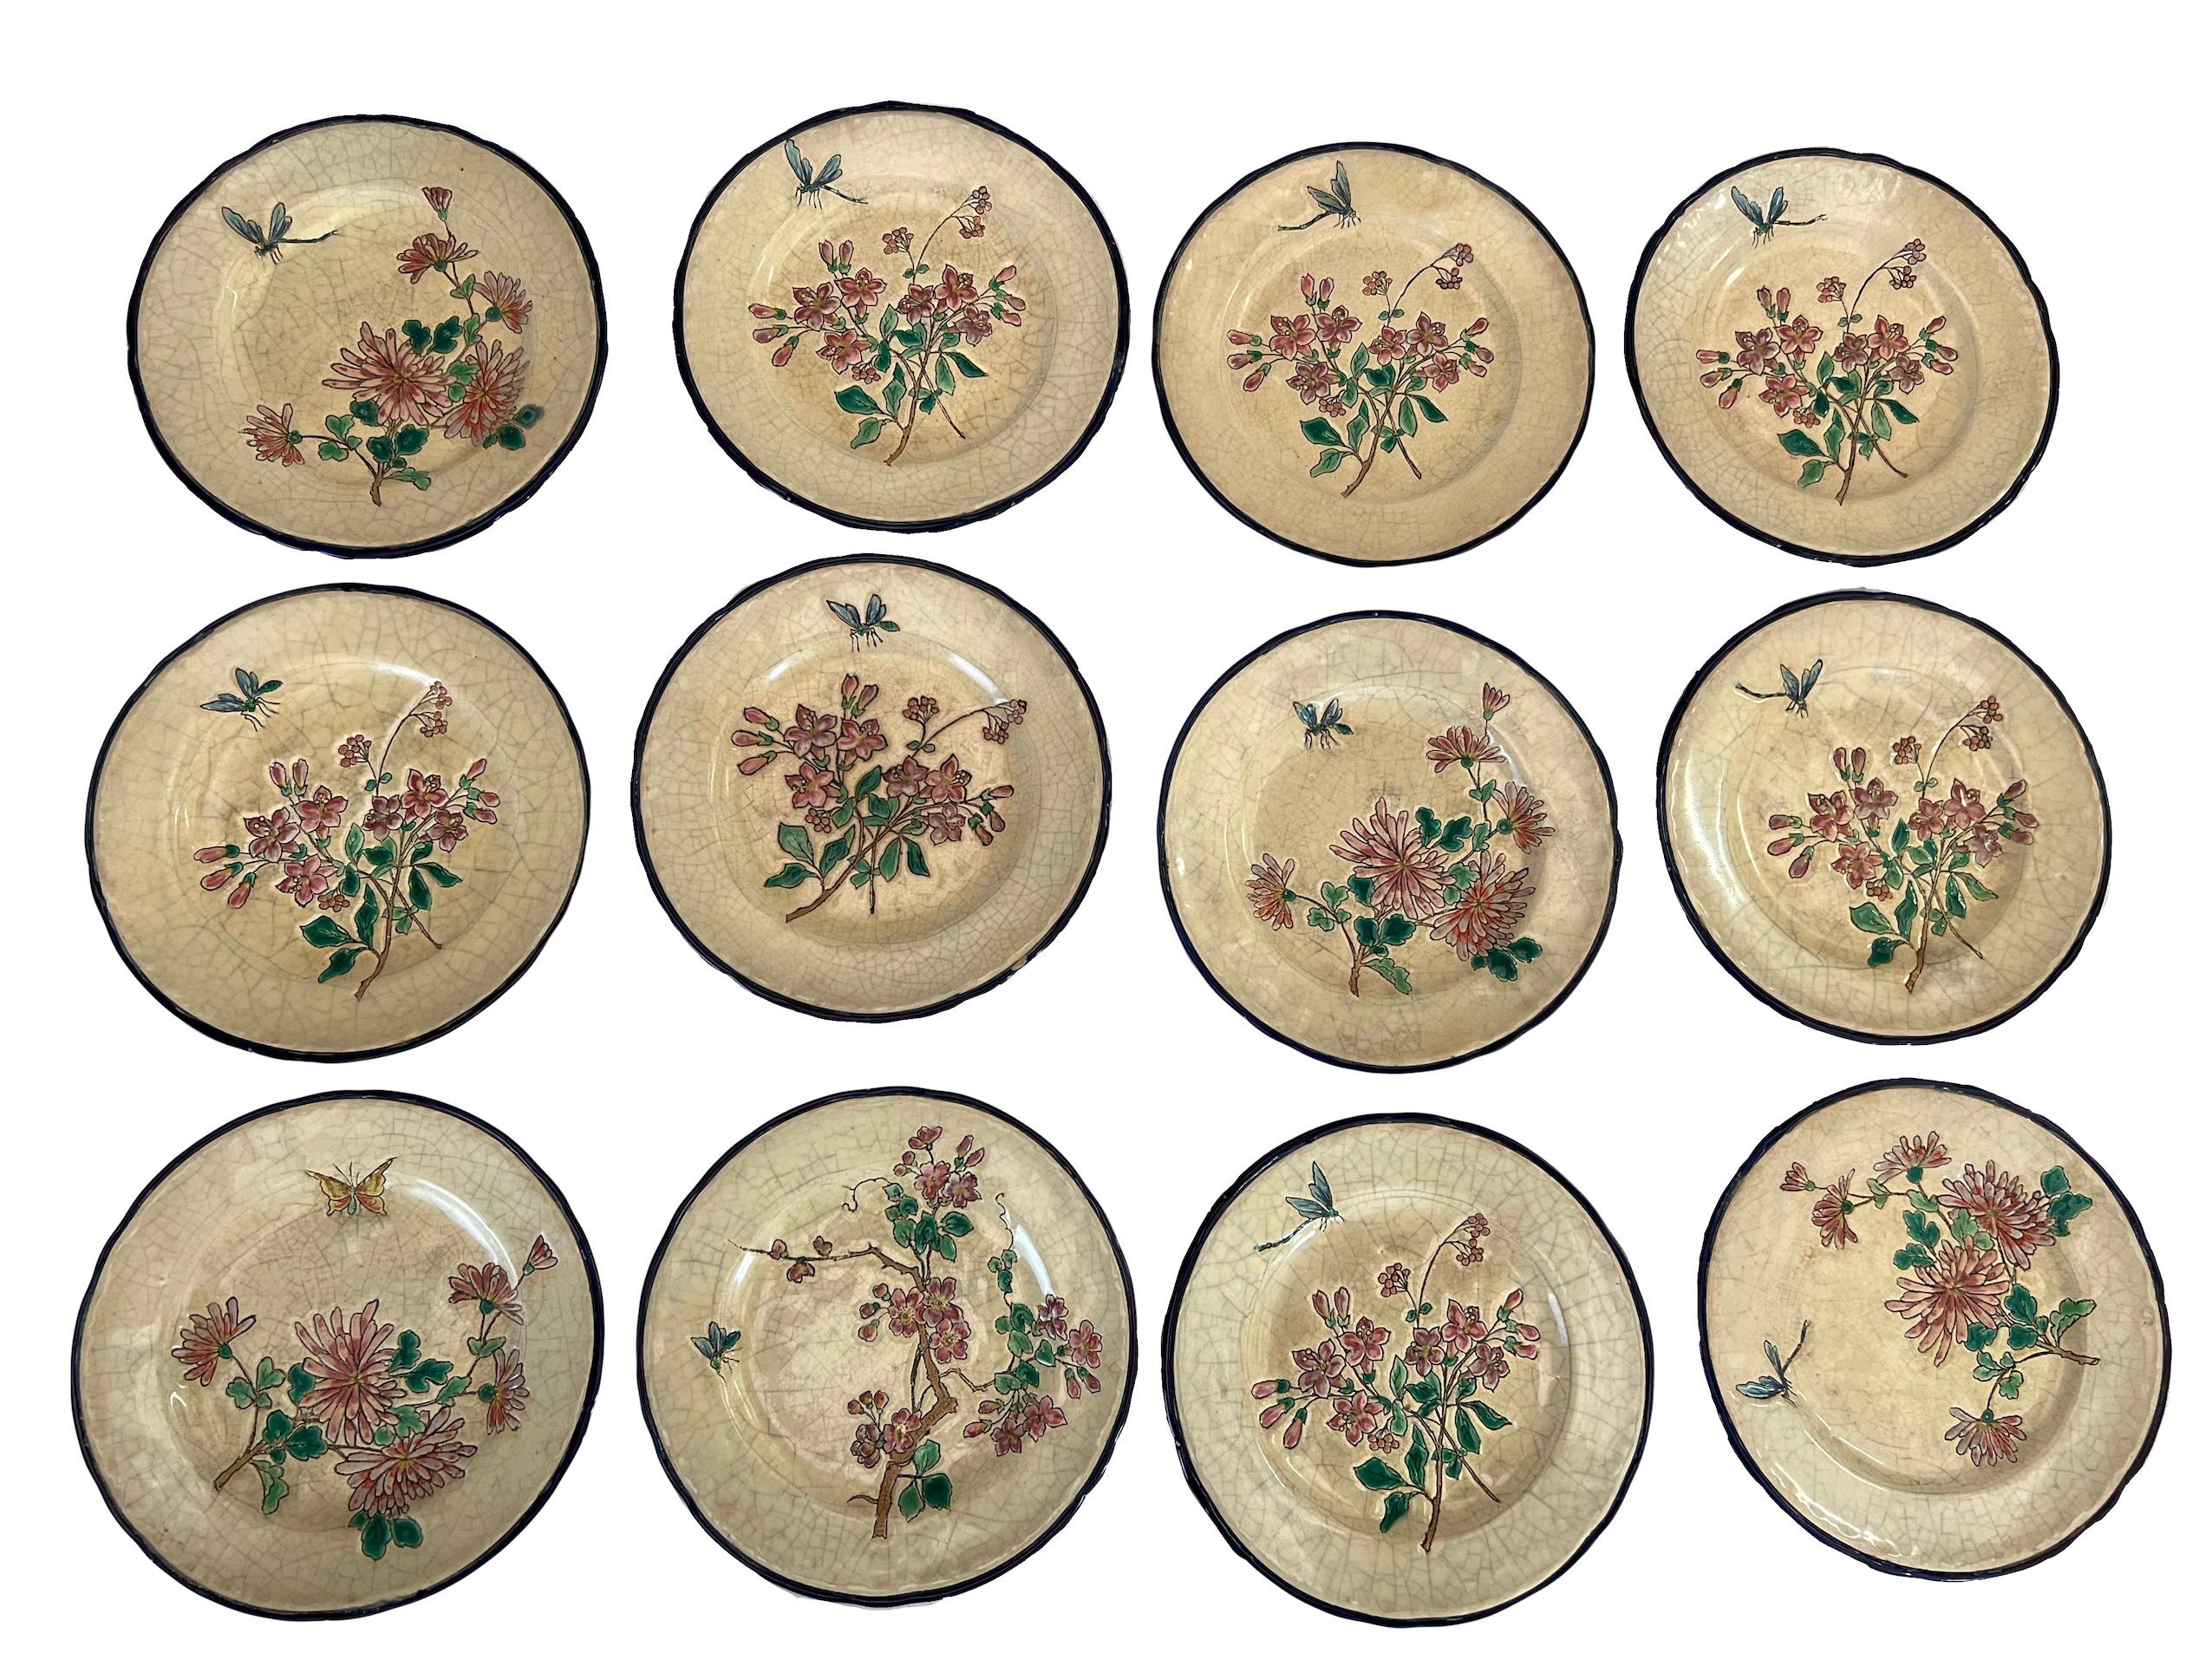 Cet ensemble se compose de 12 assiettes à dessert en émaux de Longwy. Chaque assiette est unique et met en scène un arbuste en fleurs accompagné d'un insecte dans un style japonisant. Leur décoration est raffinée et elles peuvent être utilisées pour